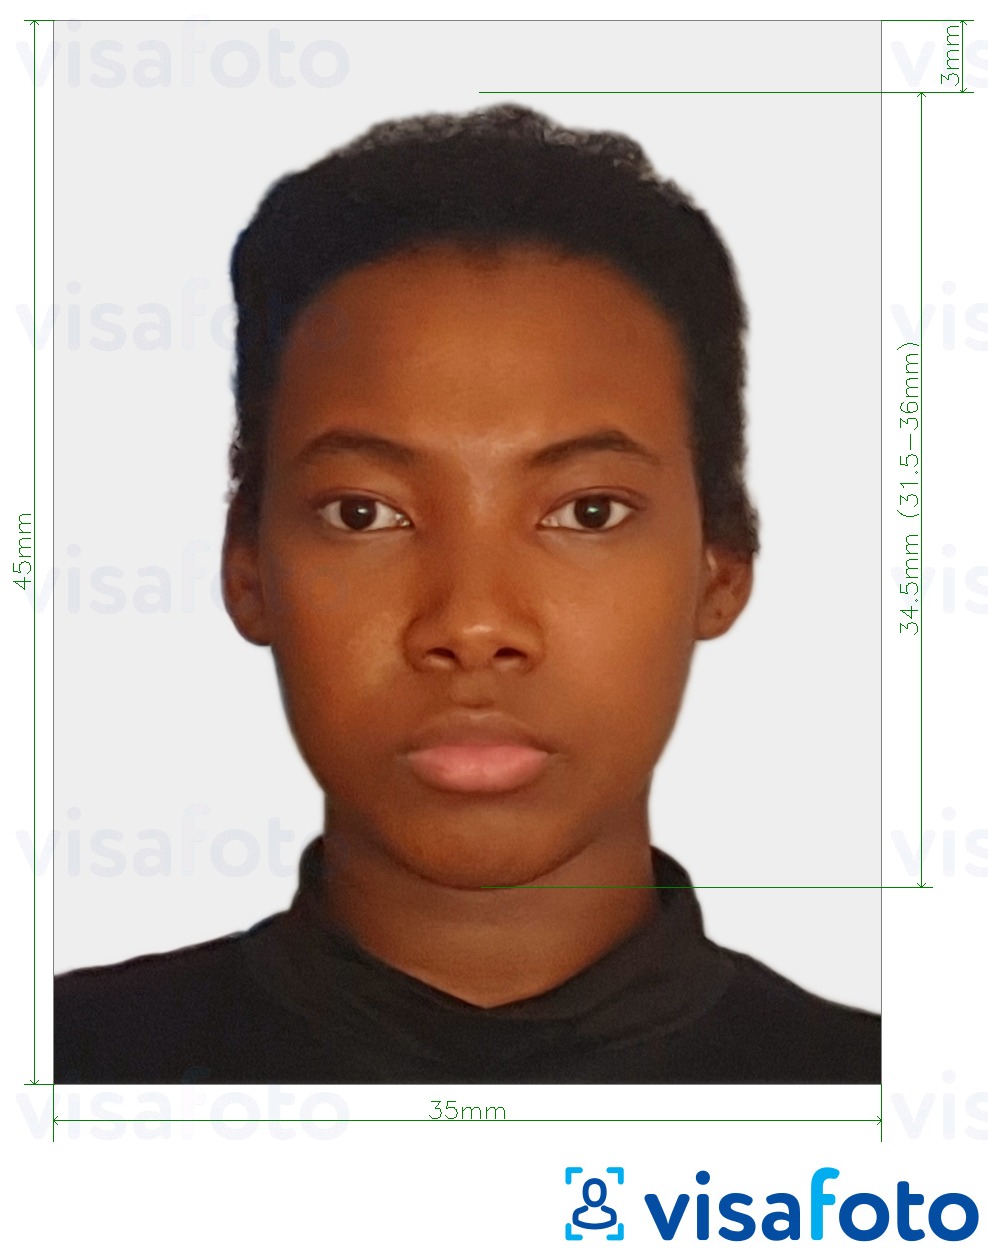 Primjer fotografije za Togo putovnica 4,5x3,5 cm (45x35mm) s točno određenom veličinom